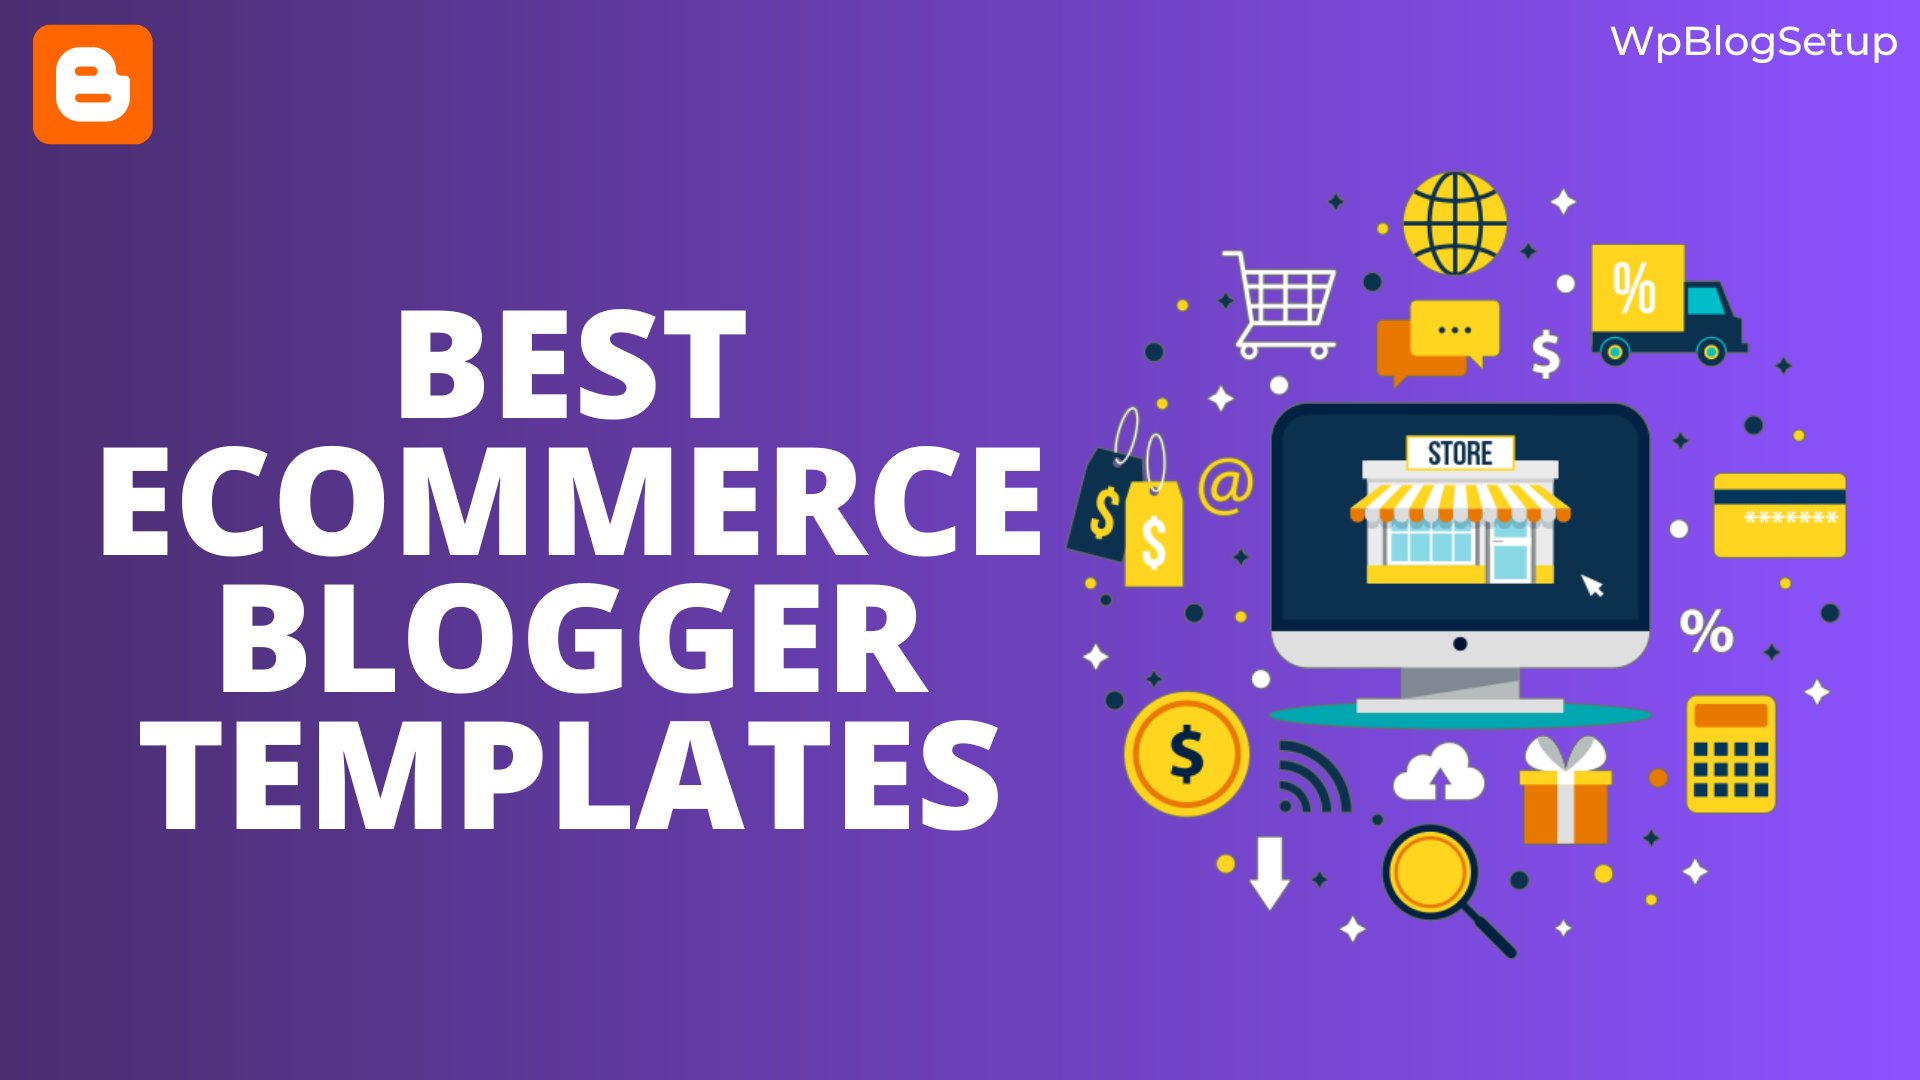 5-best-e-commerce-blogger-templates-for-online-store-wpblogsetup